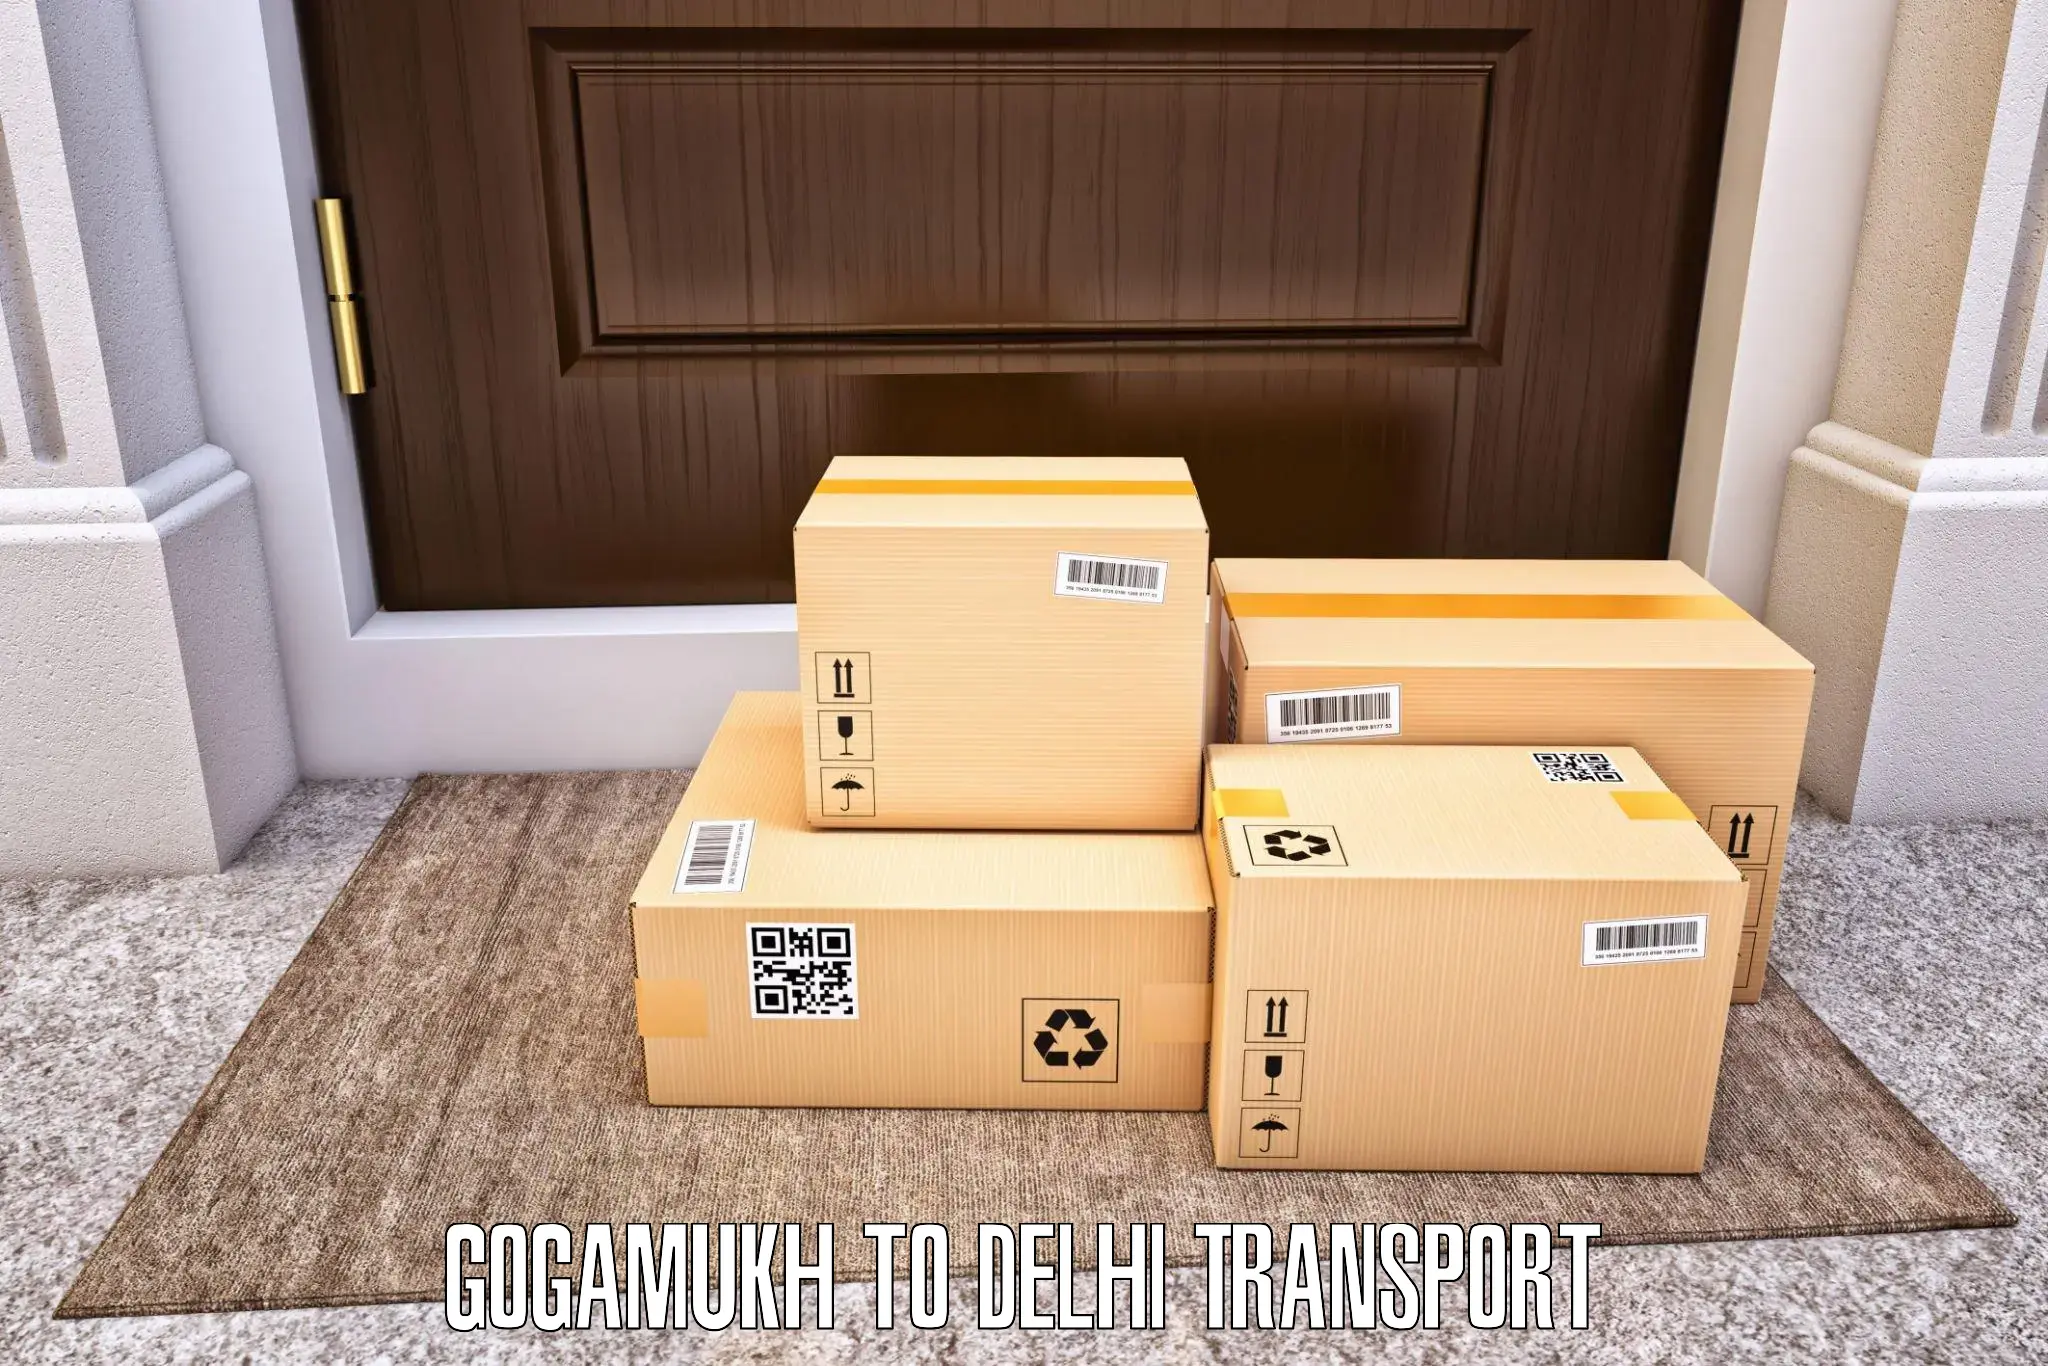 Logistics transportation services Gogamukh to Delhi